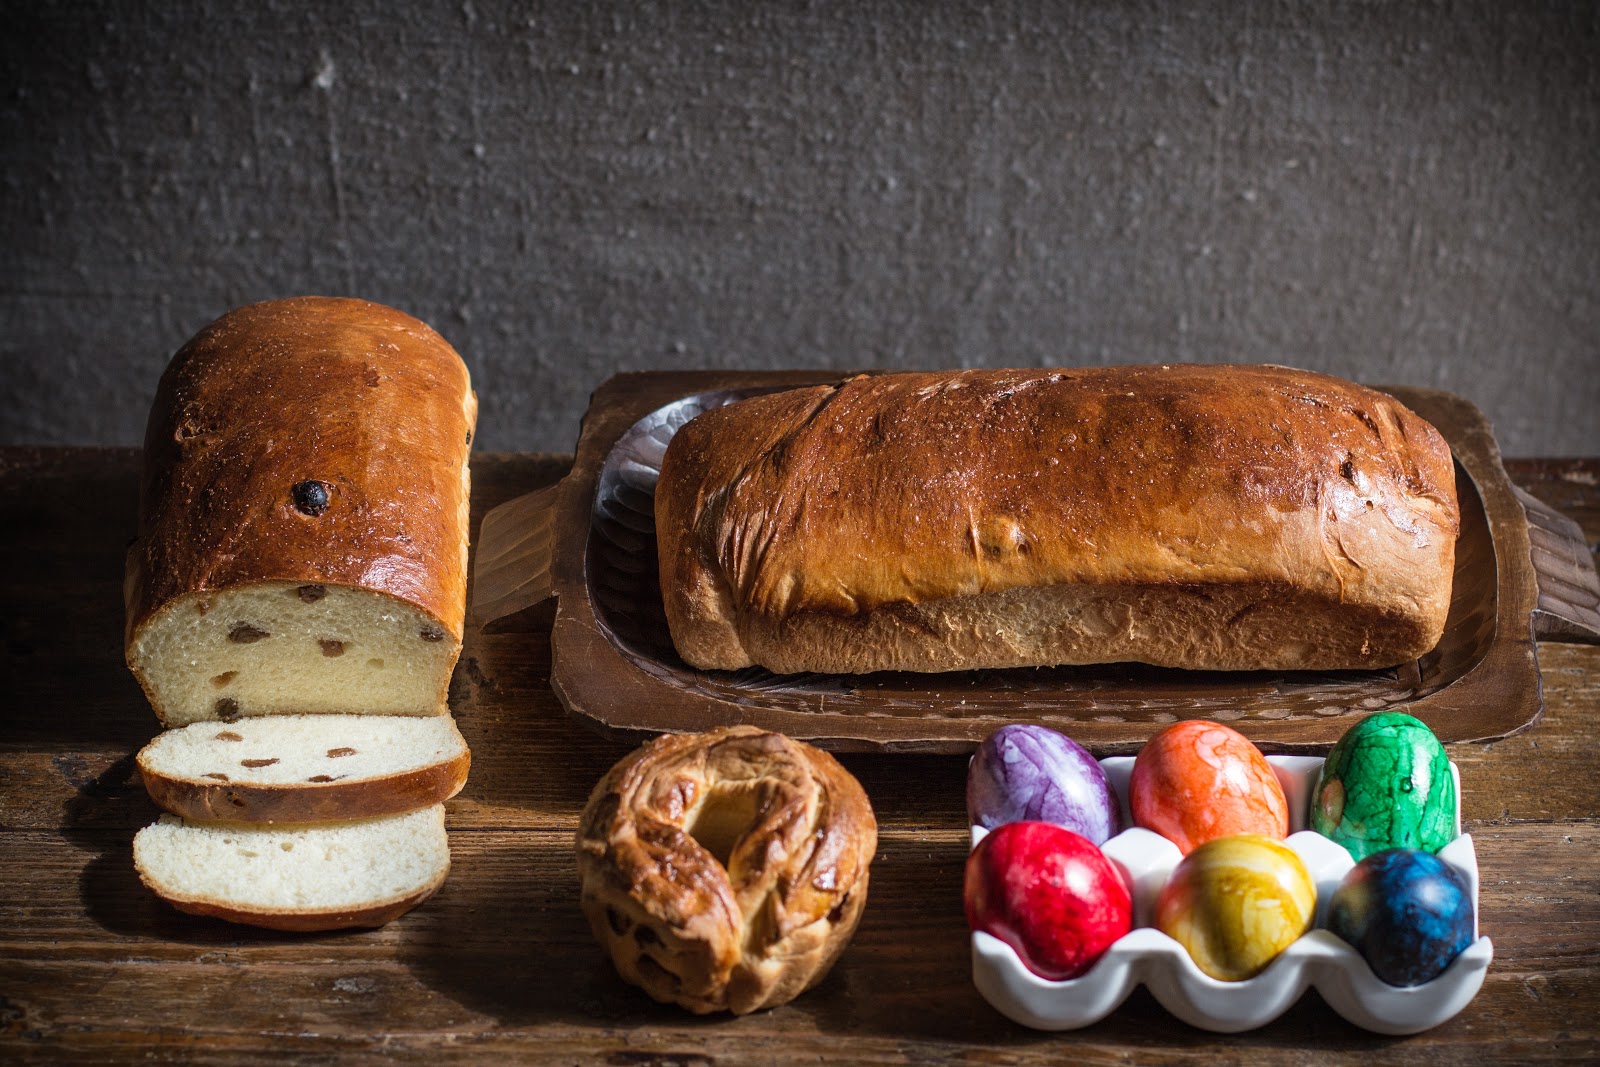 bake your slovak roots / slovenské korene: Easter Bread - Paska ...